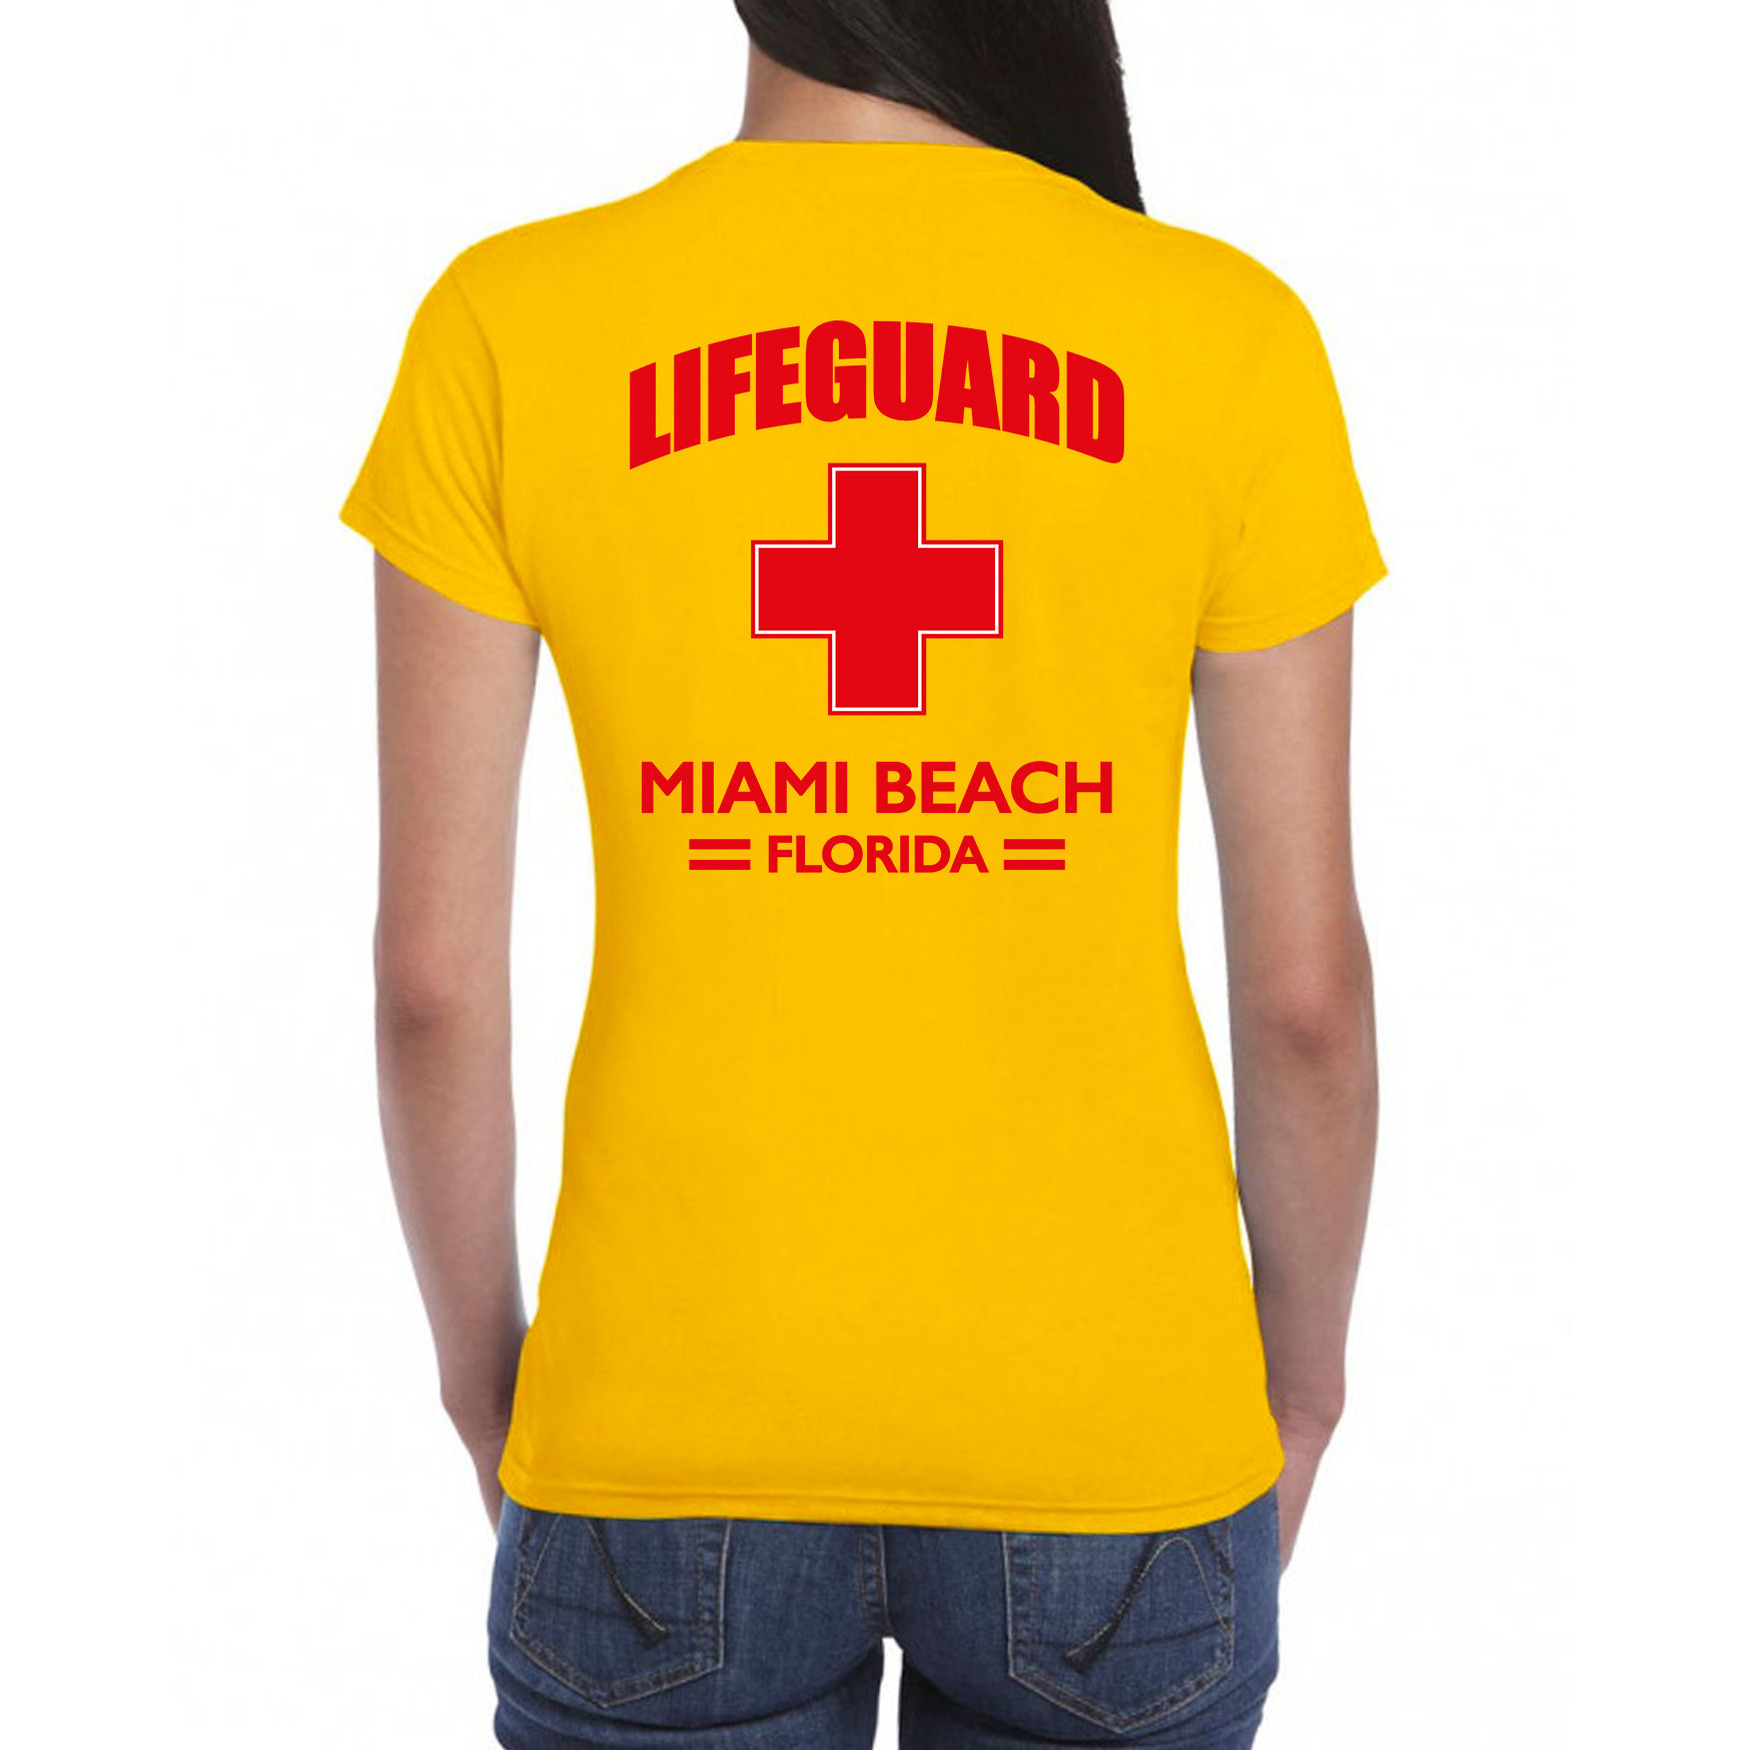 Lifeguard/ strandwacht verkleed t-shirt - shirt Lifeguard Miami Beach Florida geel voor dames